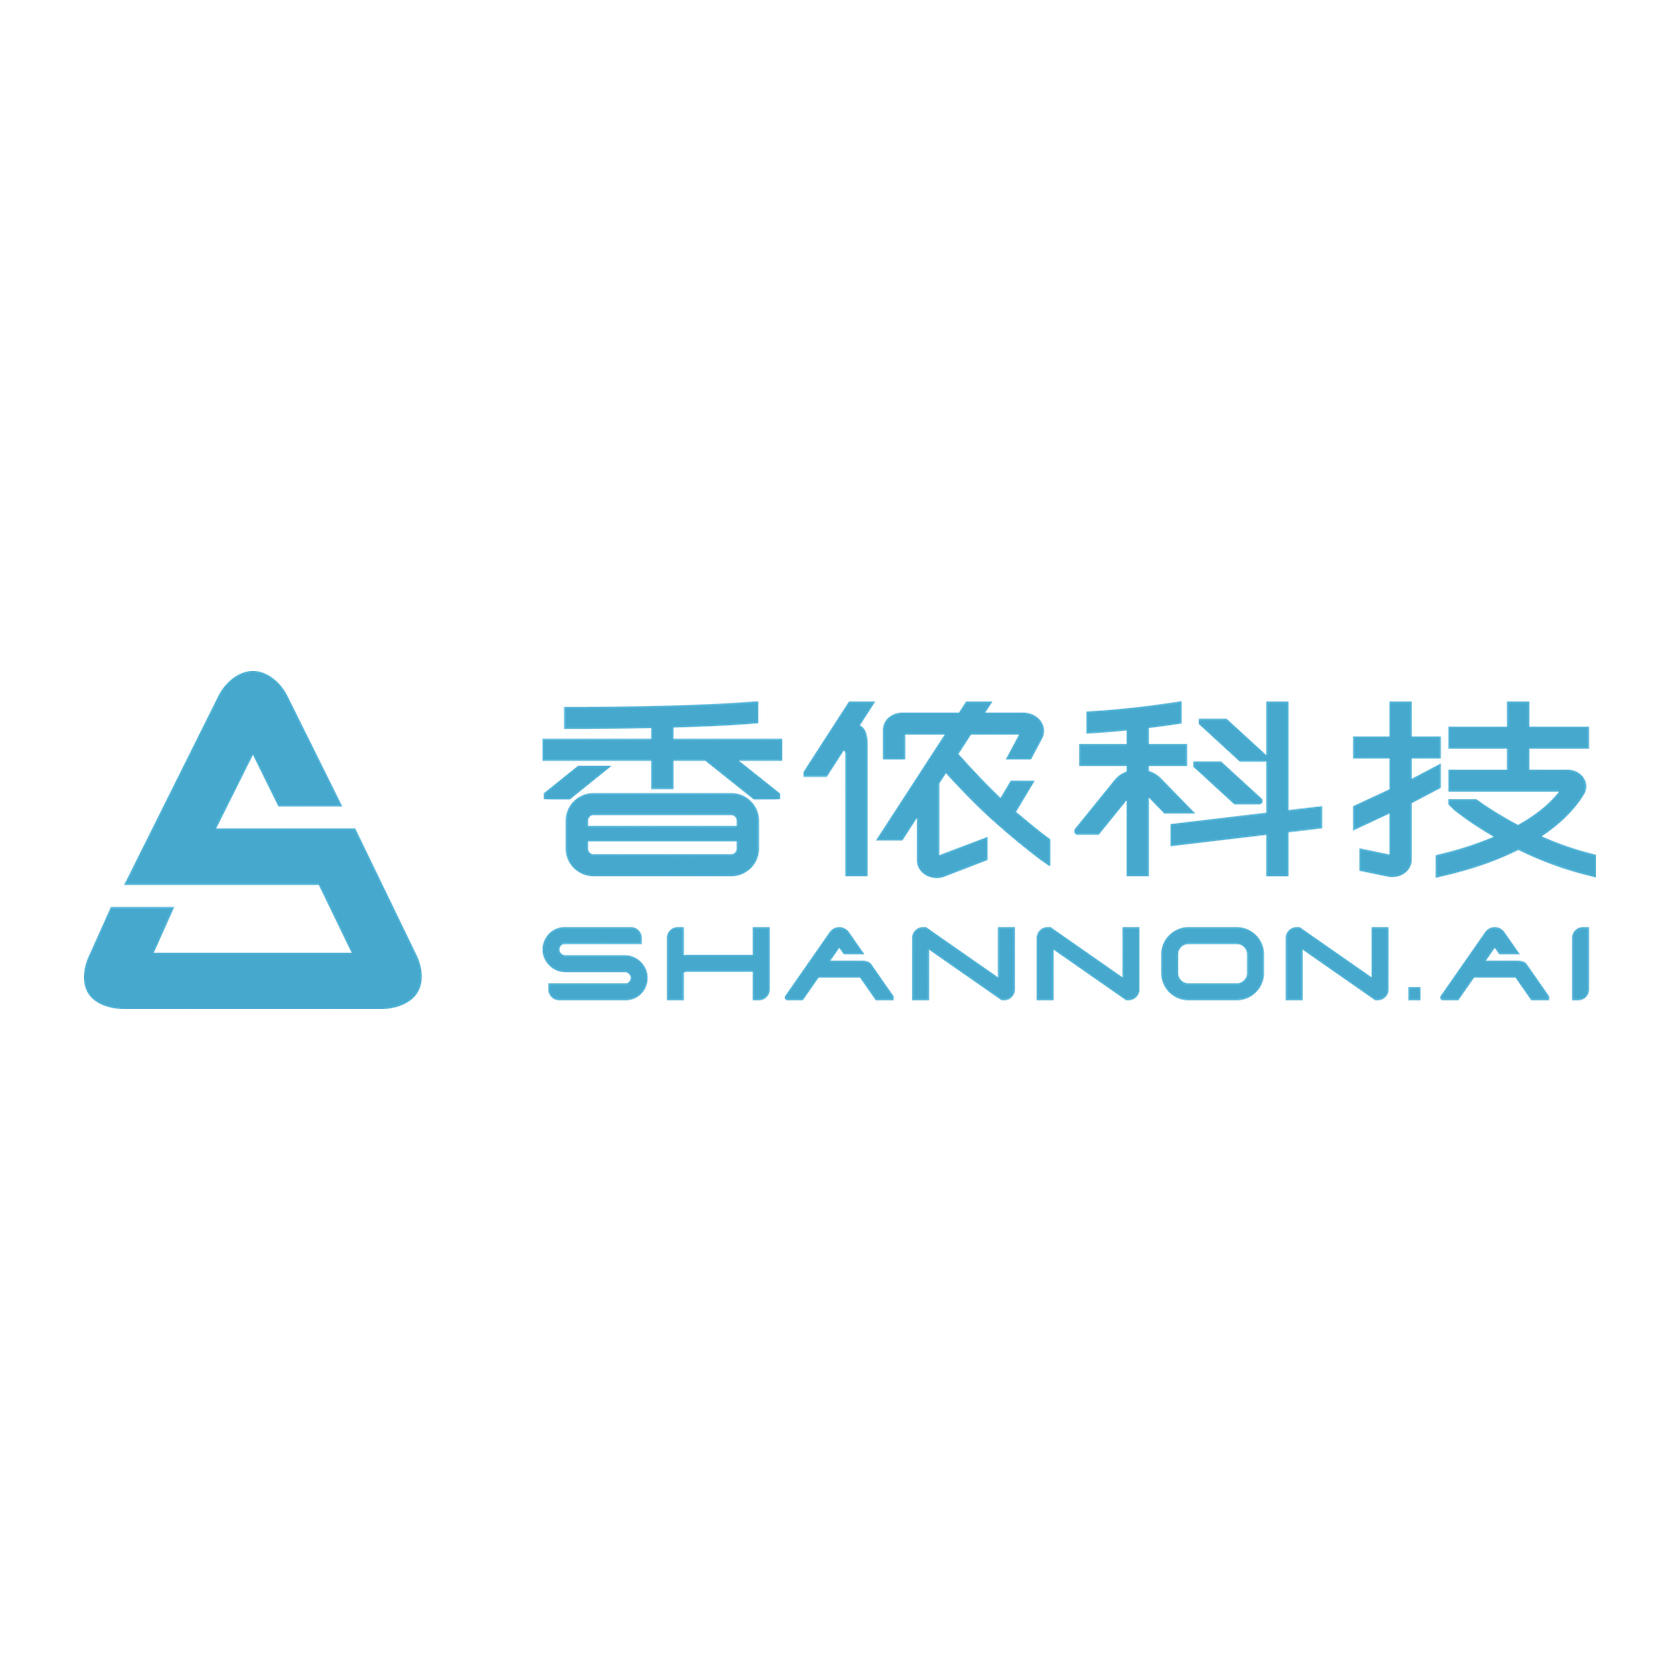 Shannon AI Logo